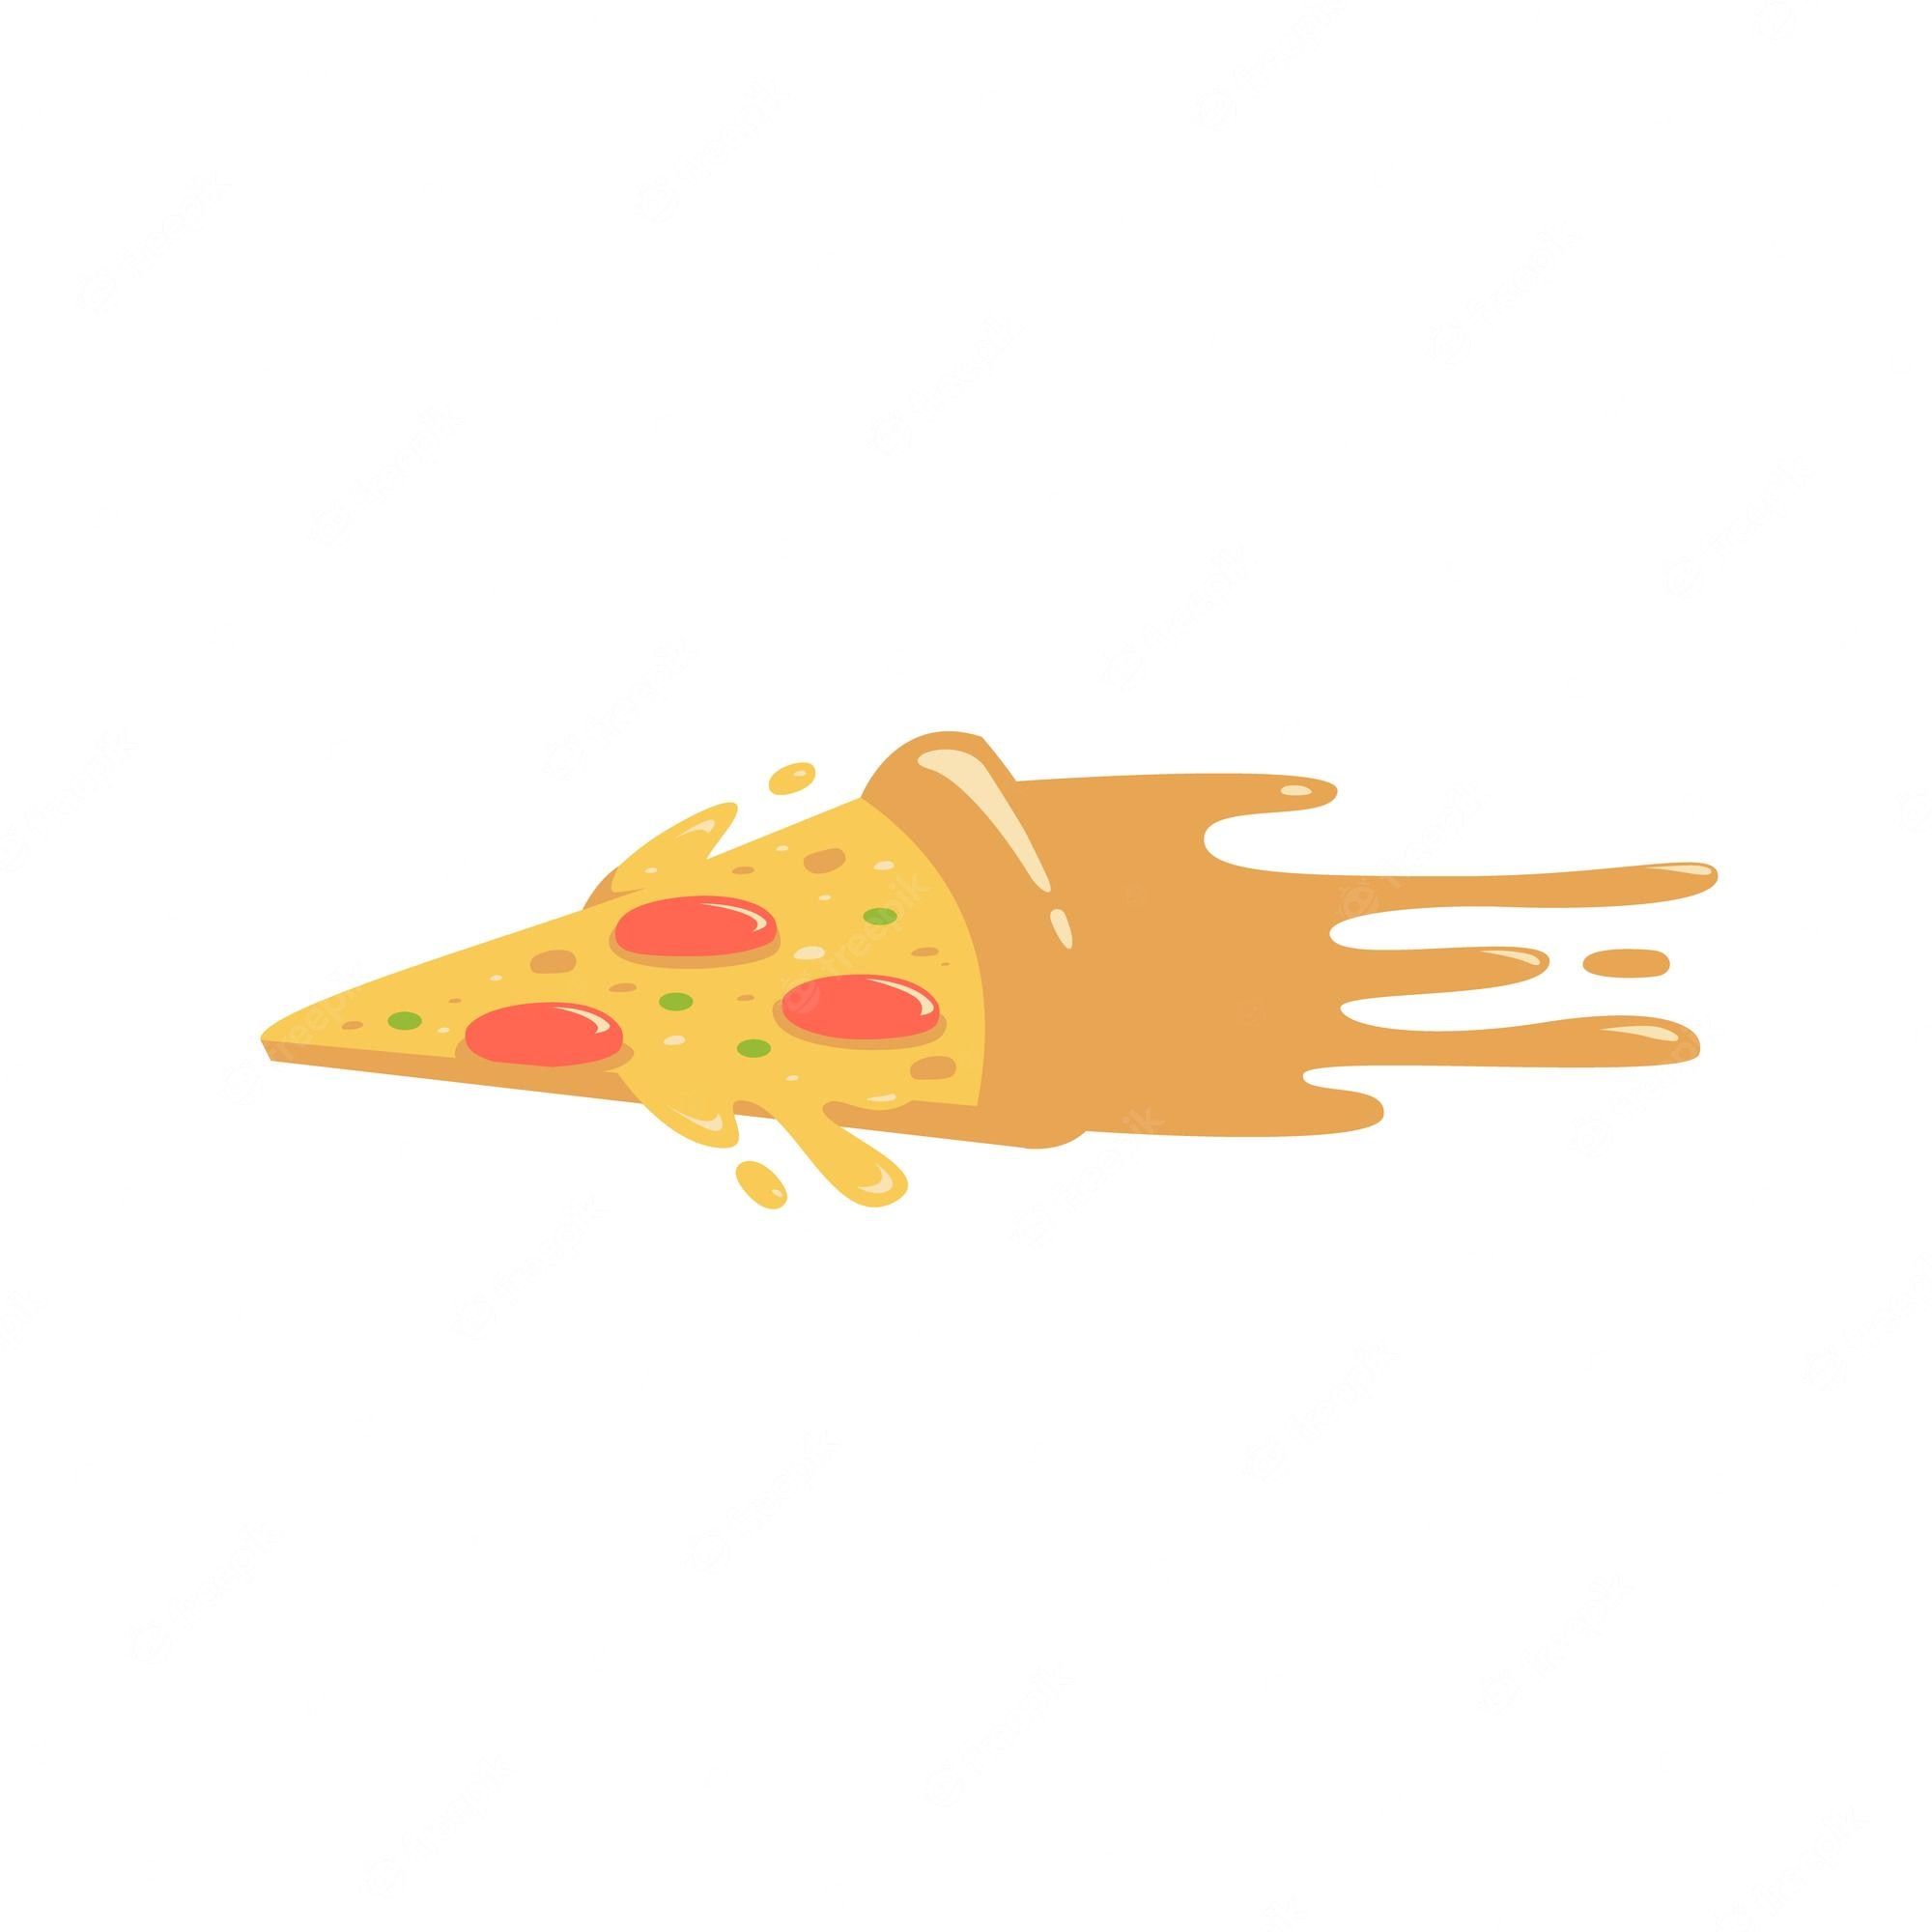 Pizza art Vectors & Illustrations for Free Download